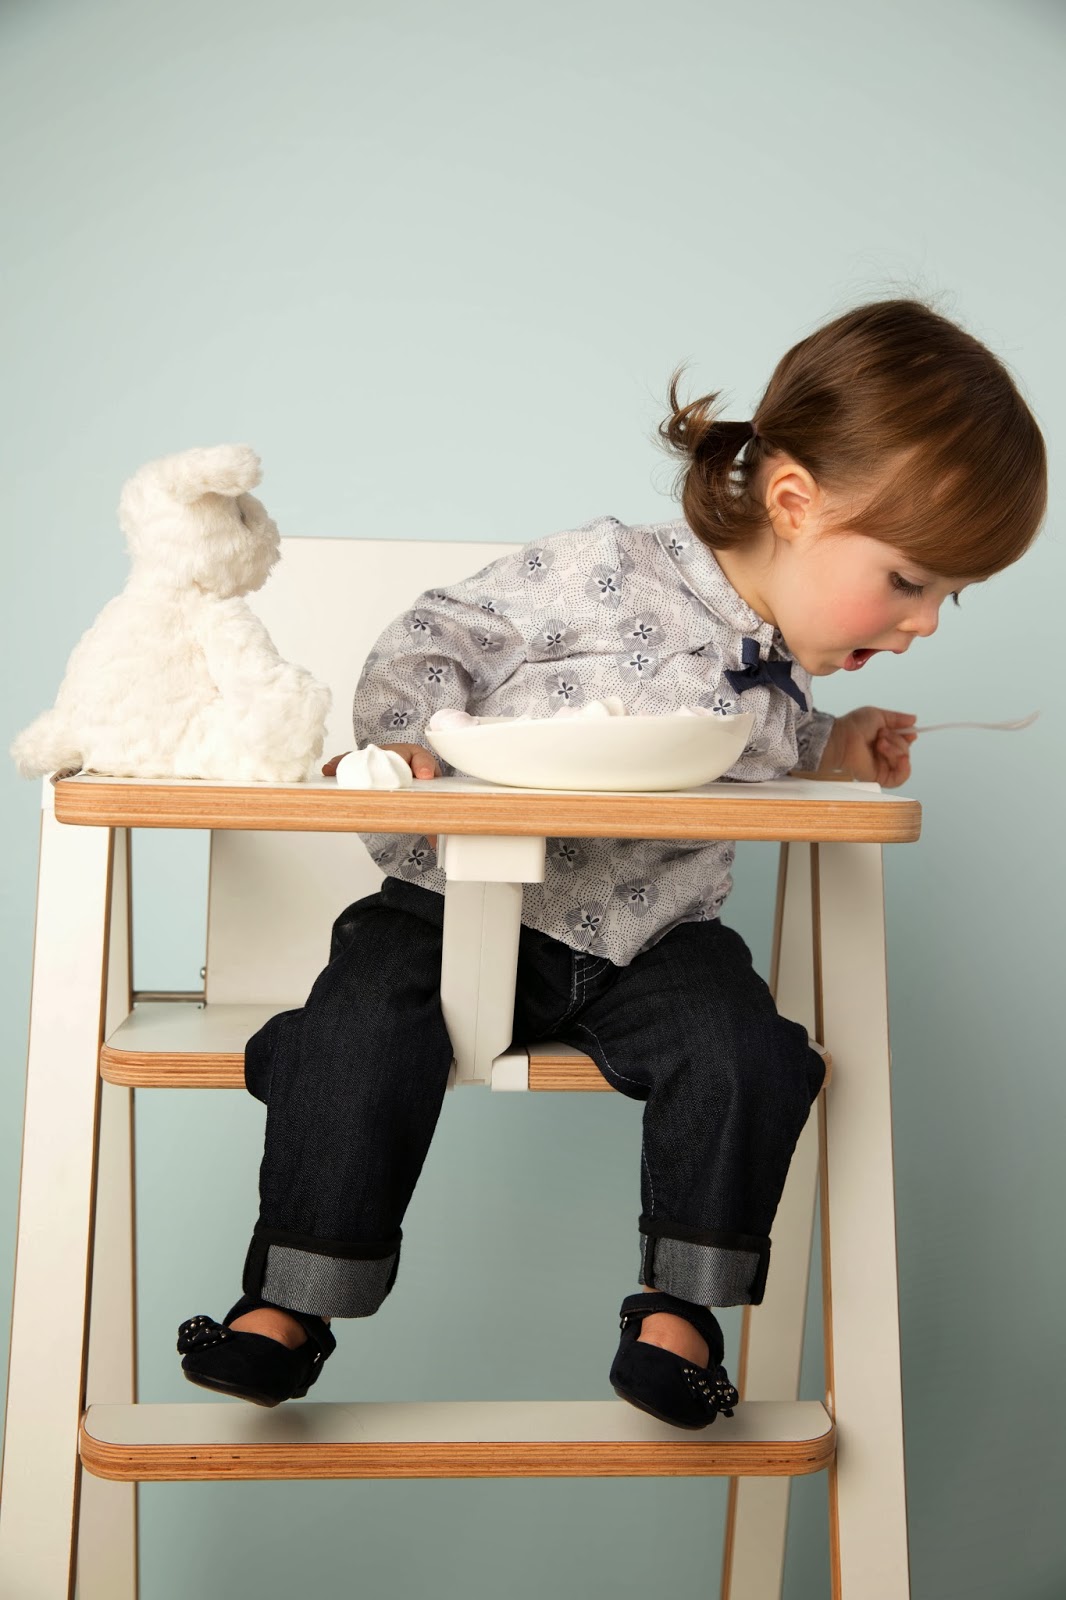 Mobilier bébé : Supaflat, la chaise haute pliable extra plate (4,2 cm d’épaisseur)